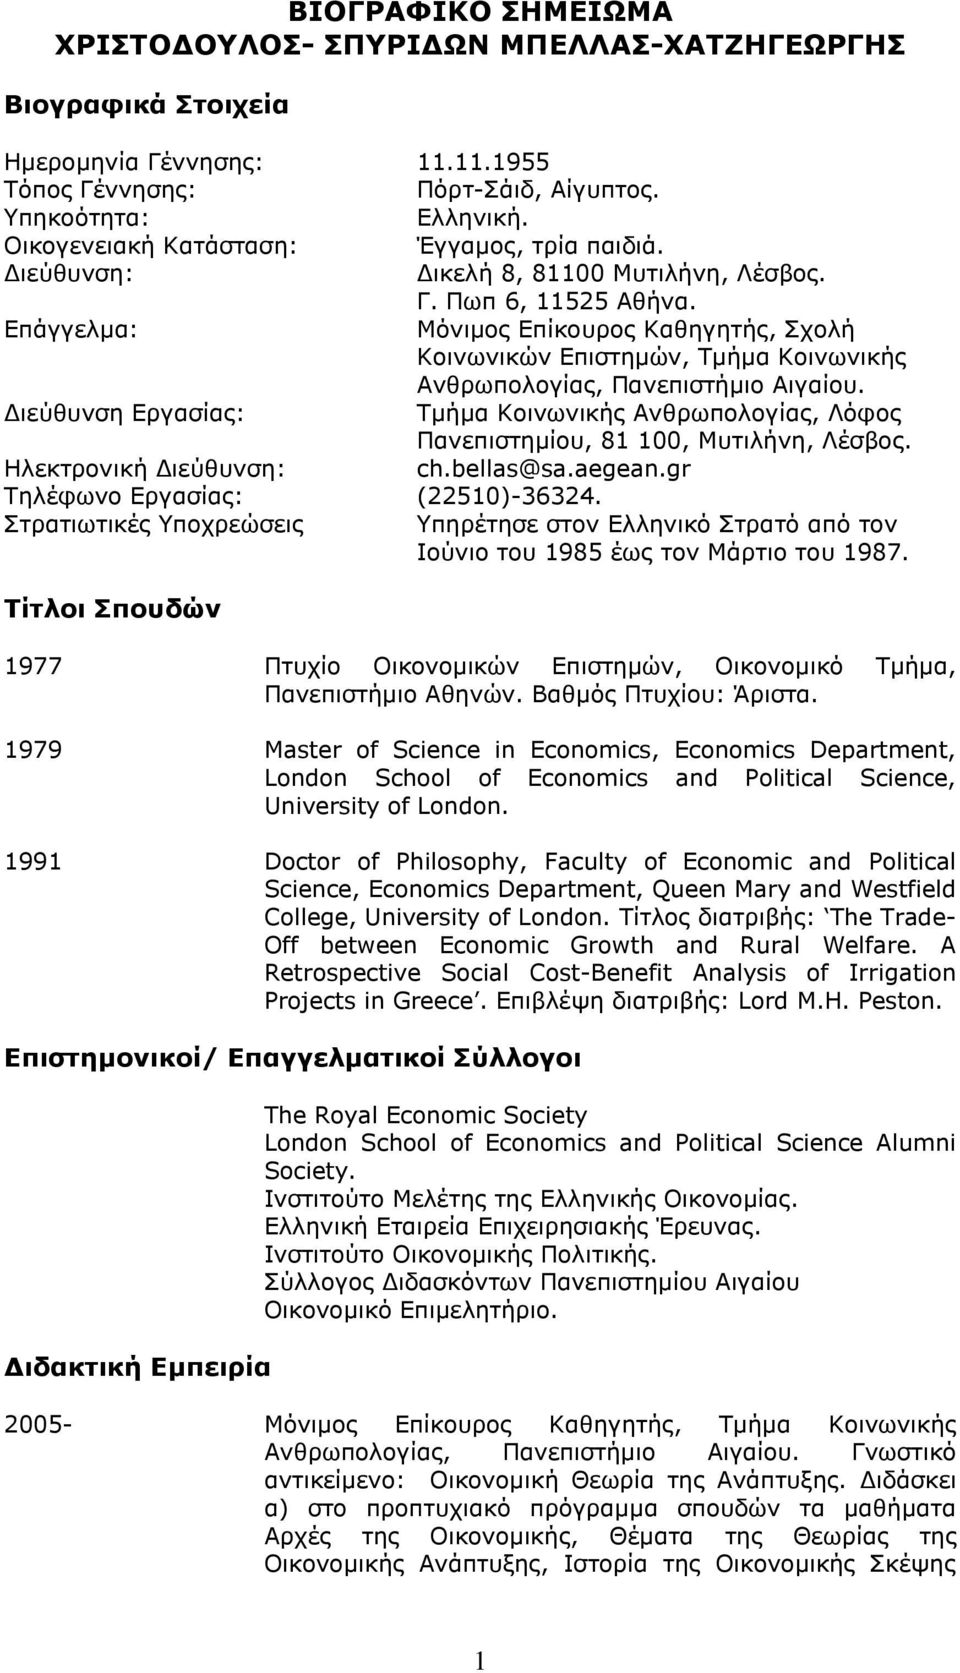 Επάγγελμα: Μόνιμος Επίκουρος Καθηγητής, Σχολή Κοινωνικών Επιστημών, Τμήμα Κοινωνικής Ανθρωπολογίας, Πανεπιστήμιο Αιγαίου.